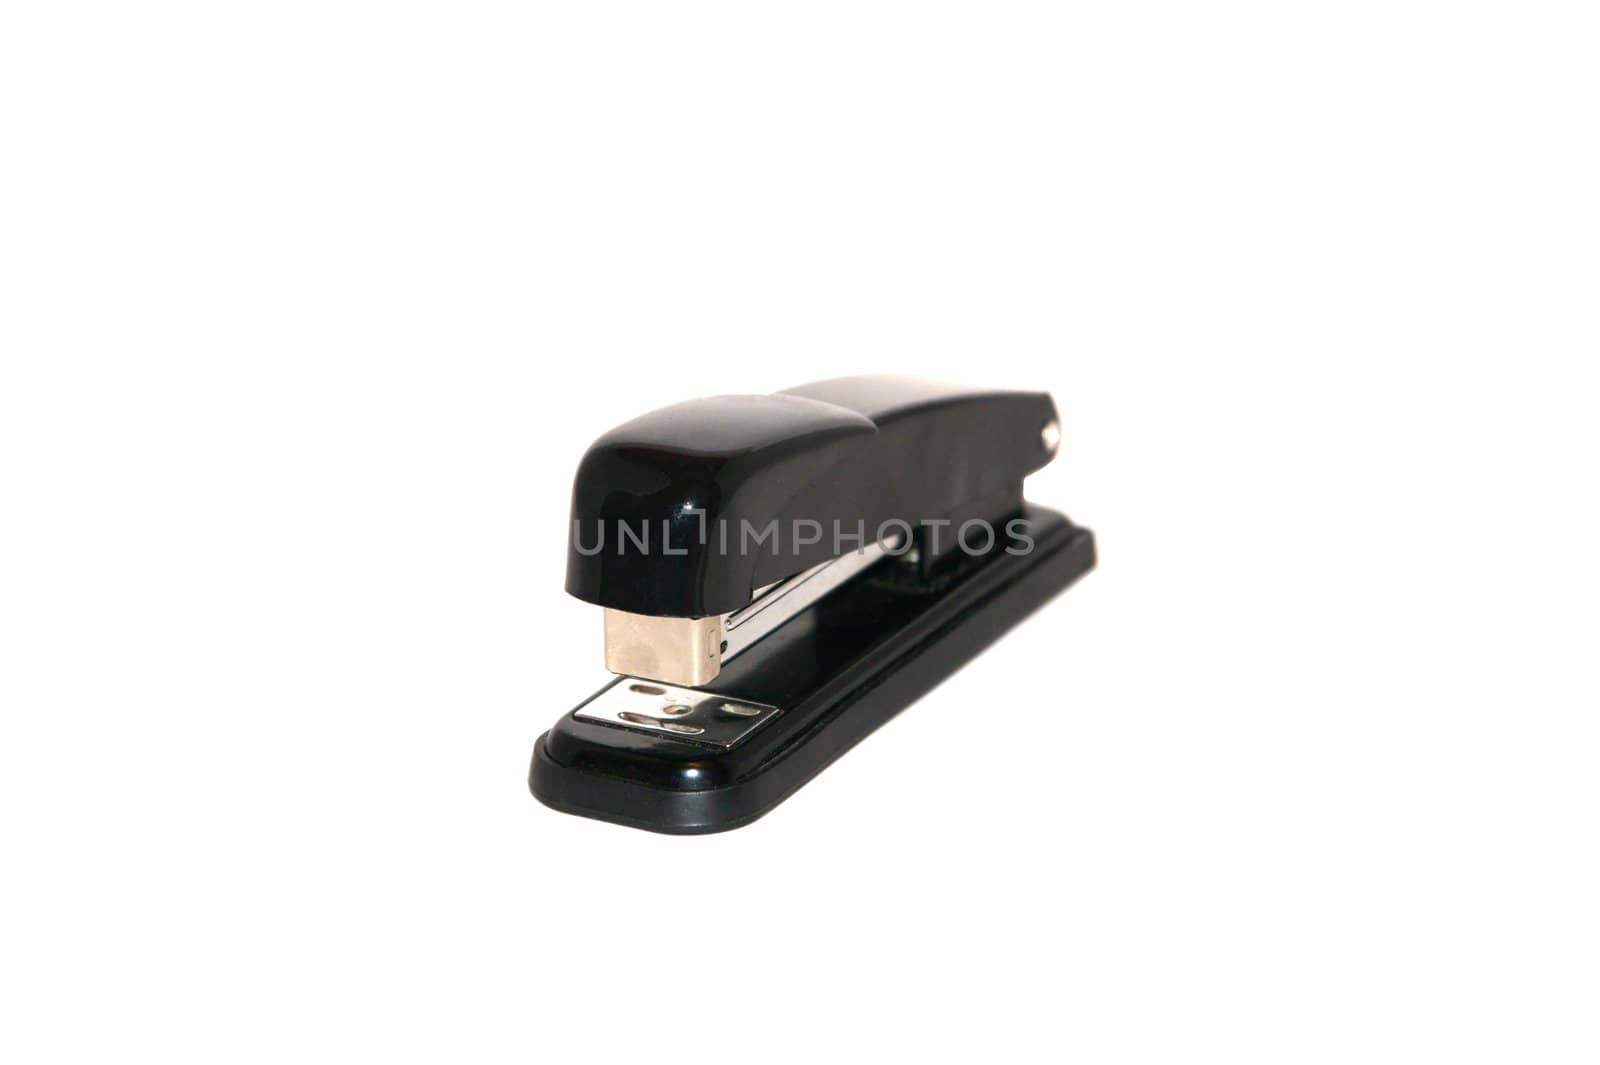 Black stapler on white background